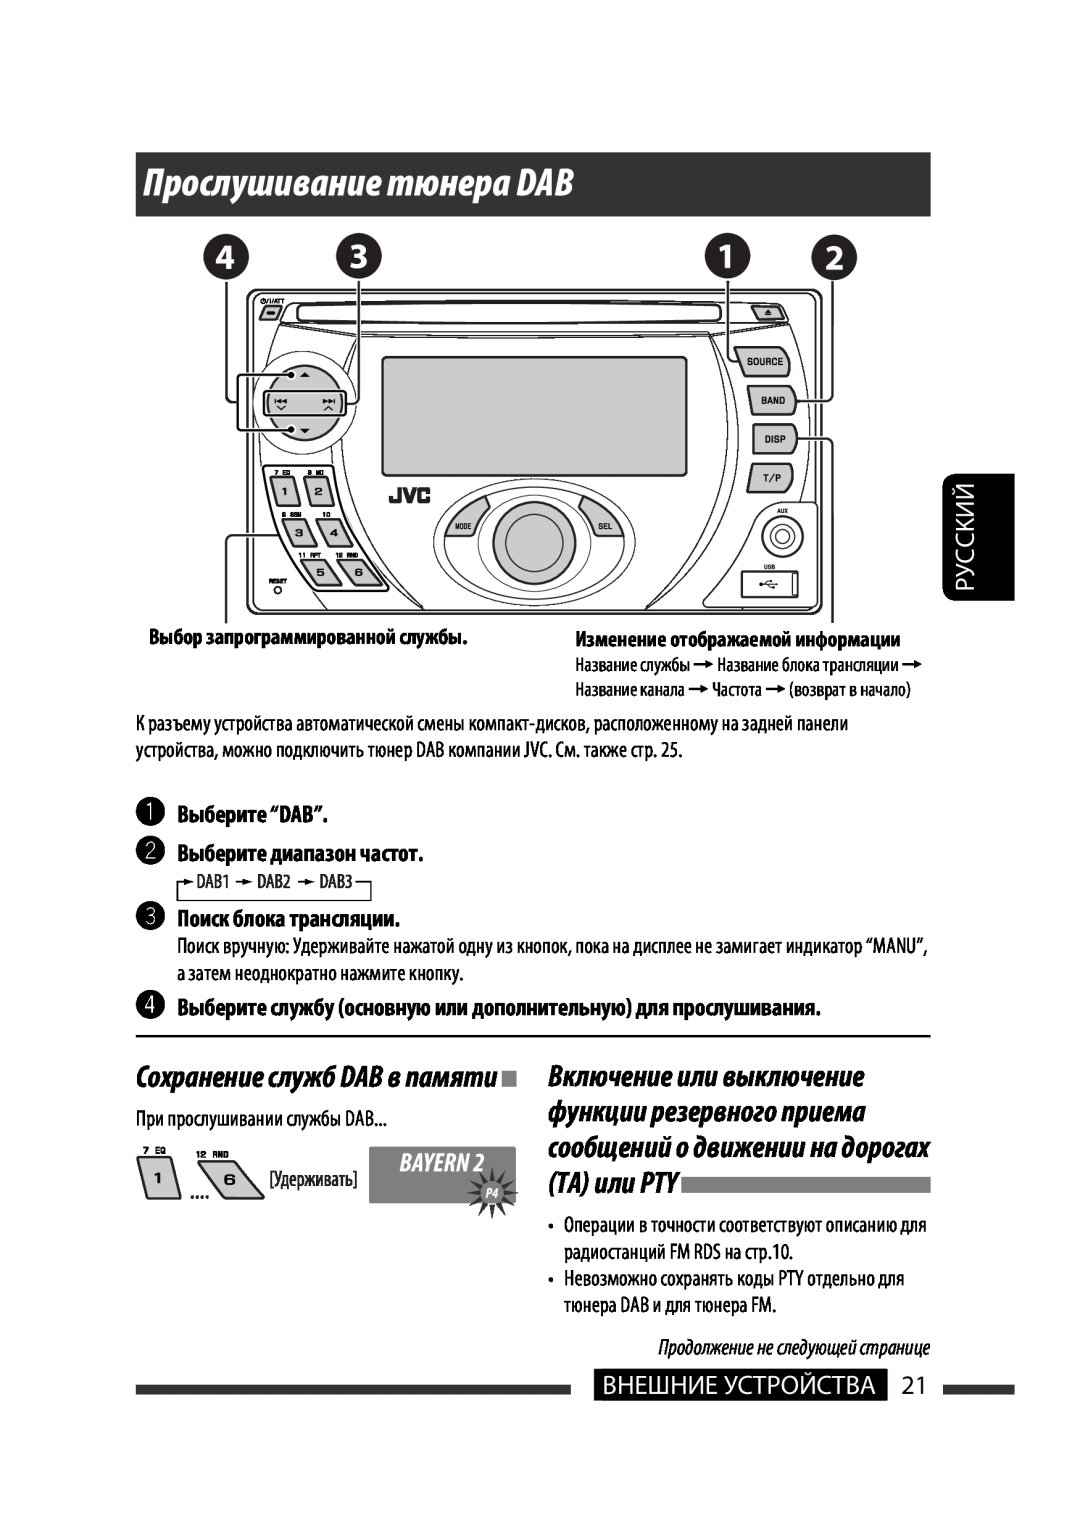 JVC KW-XG701 manual Прослушивание тюнера DAB, ~Выберите “DAB” ŸВыберите диапазон частот, Поиск блока трансляции, Руcckий 